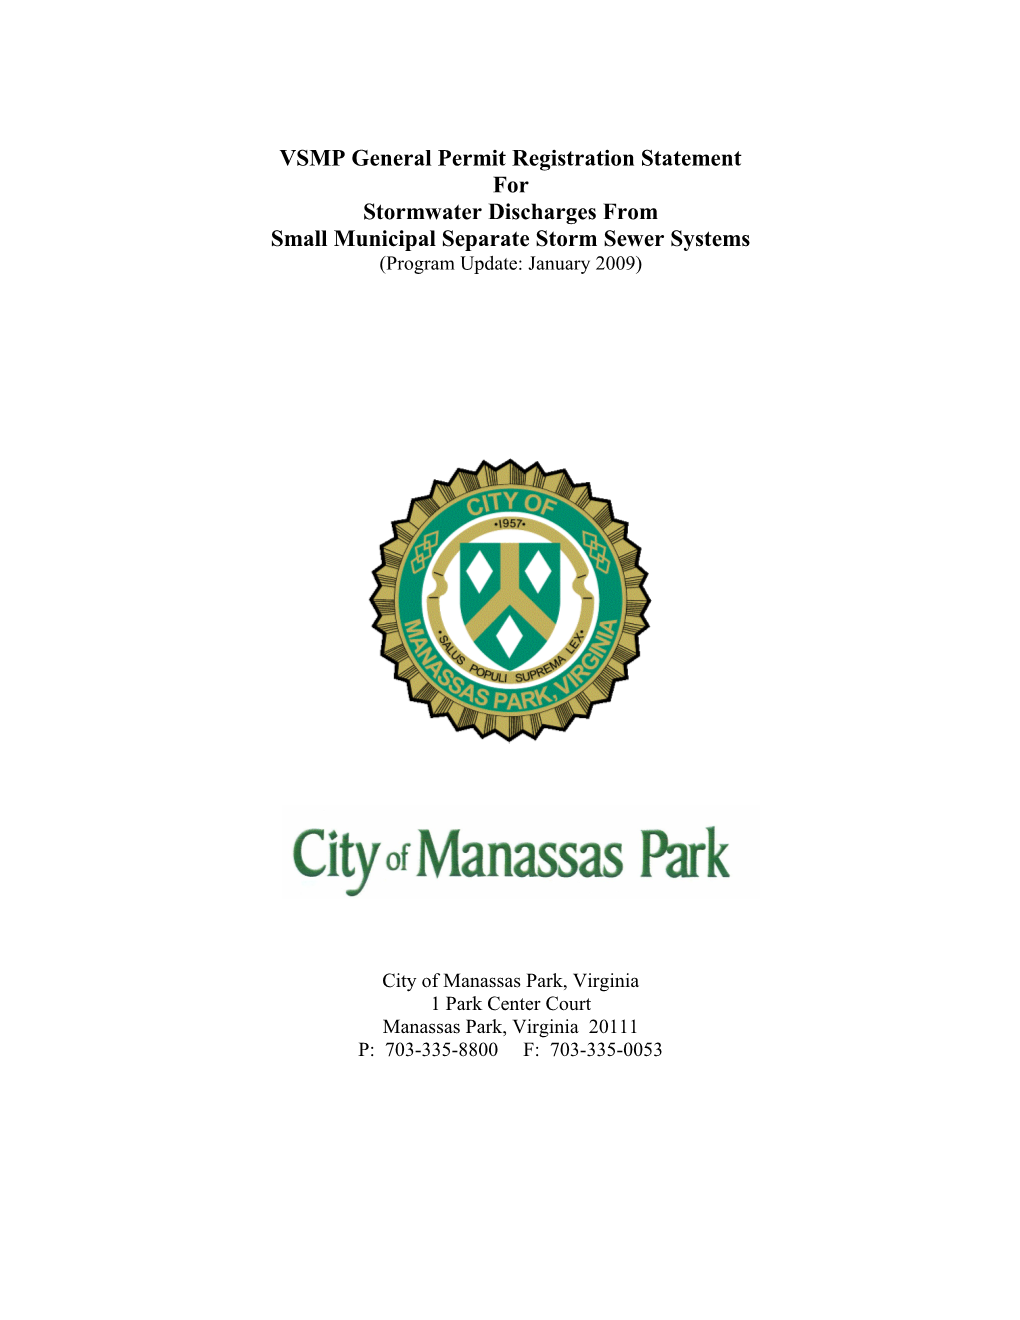 City of Manassas Park